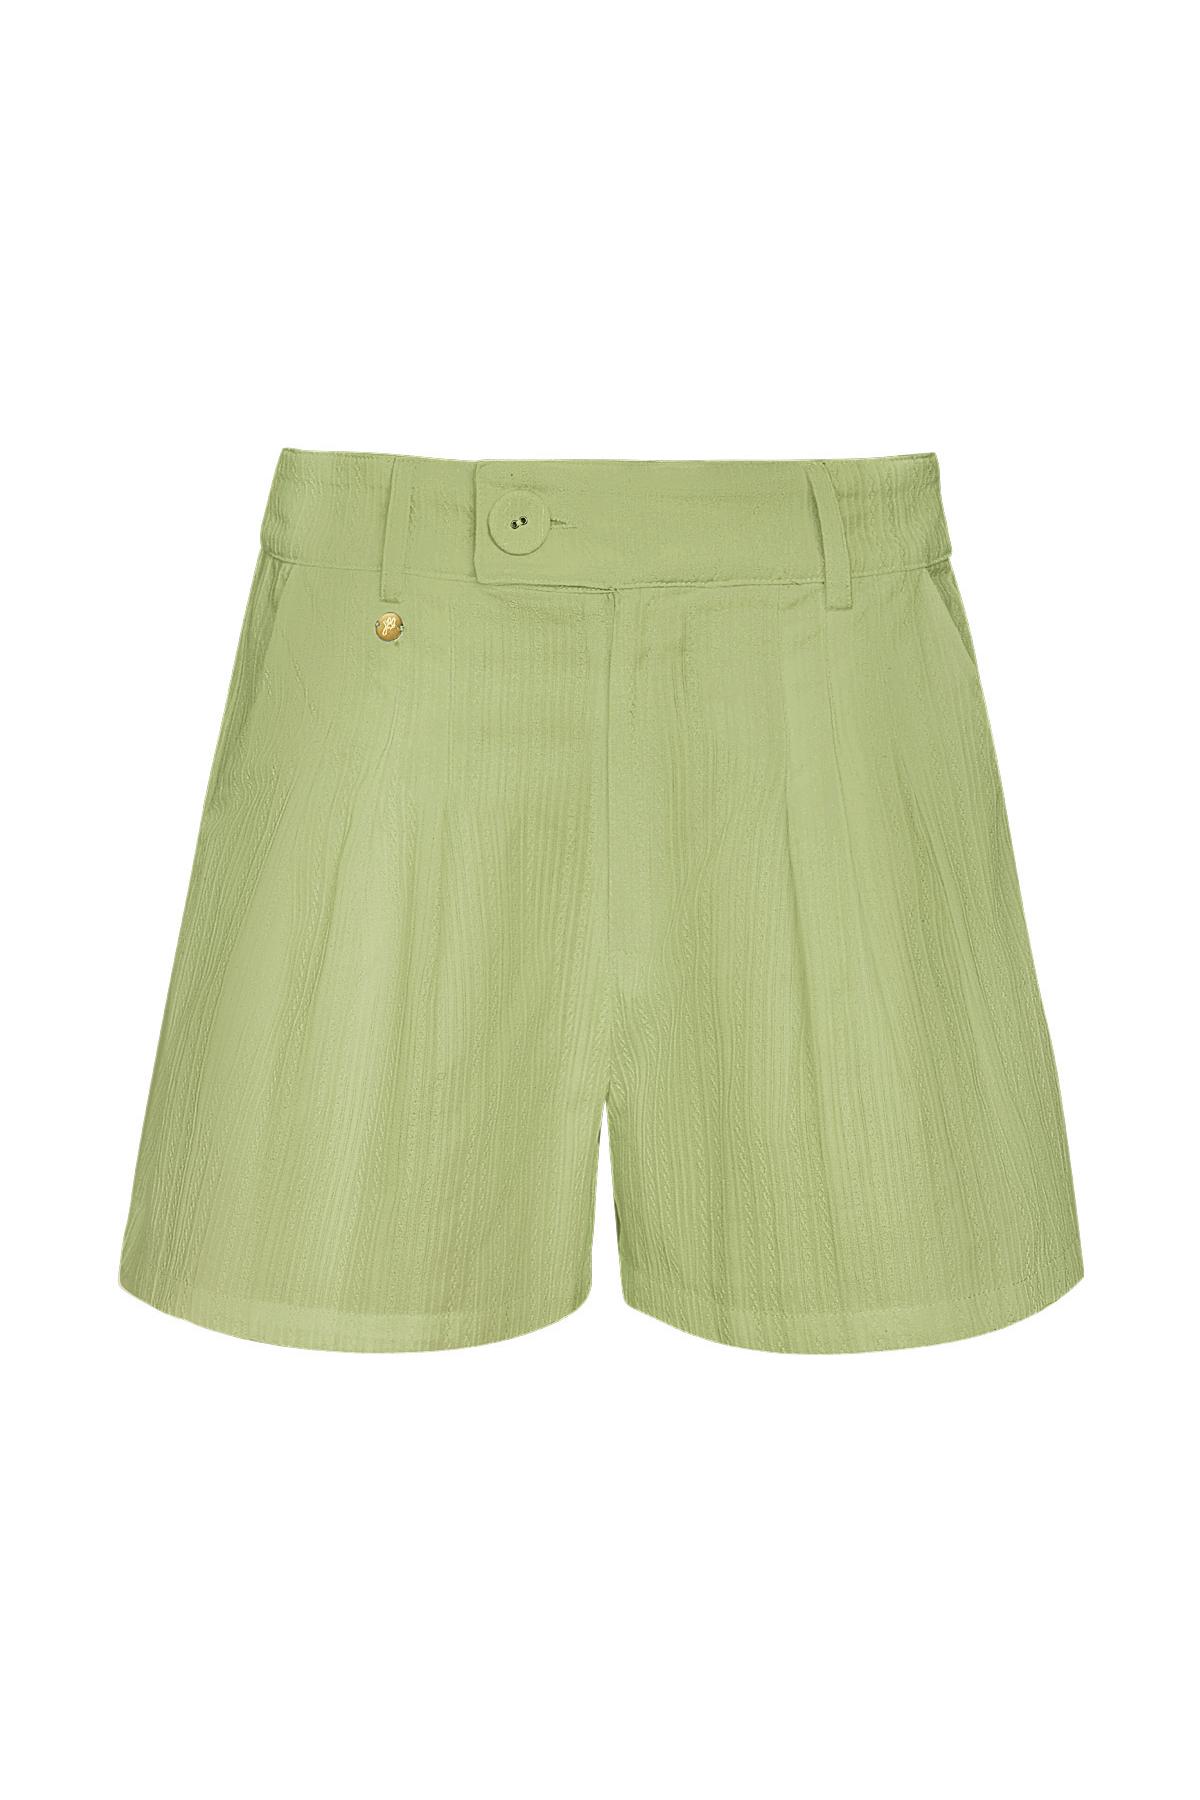 Shorts mit Knopfdetail - grün M 